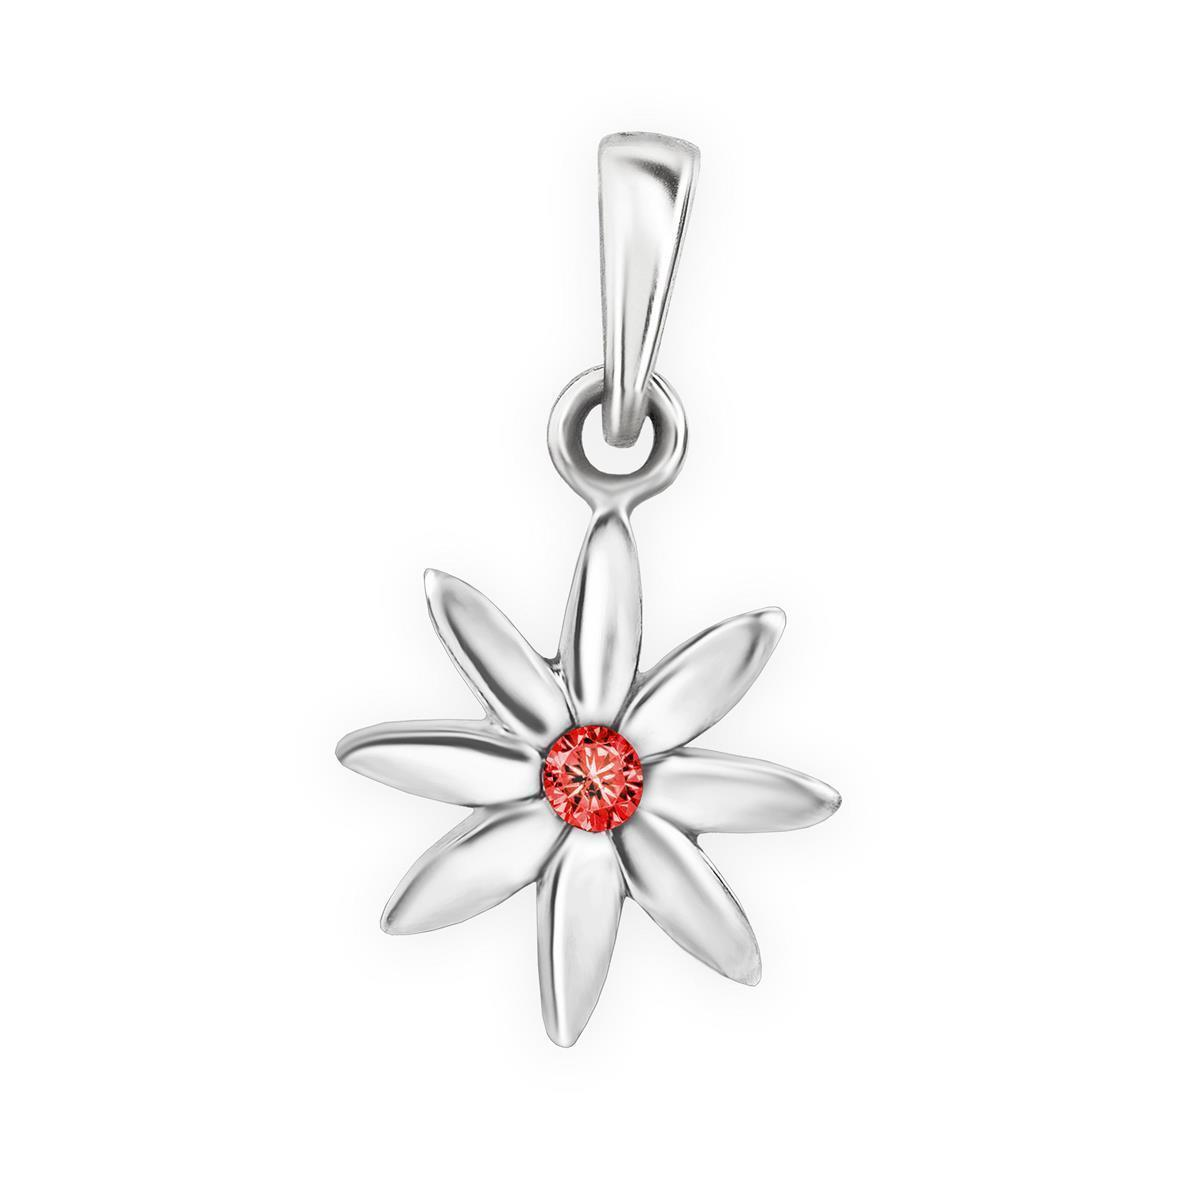 Silberner Anhänger kleine Blume Blüte Zirkoniastein rot Echt Silber 925